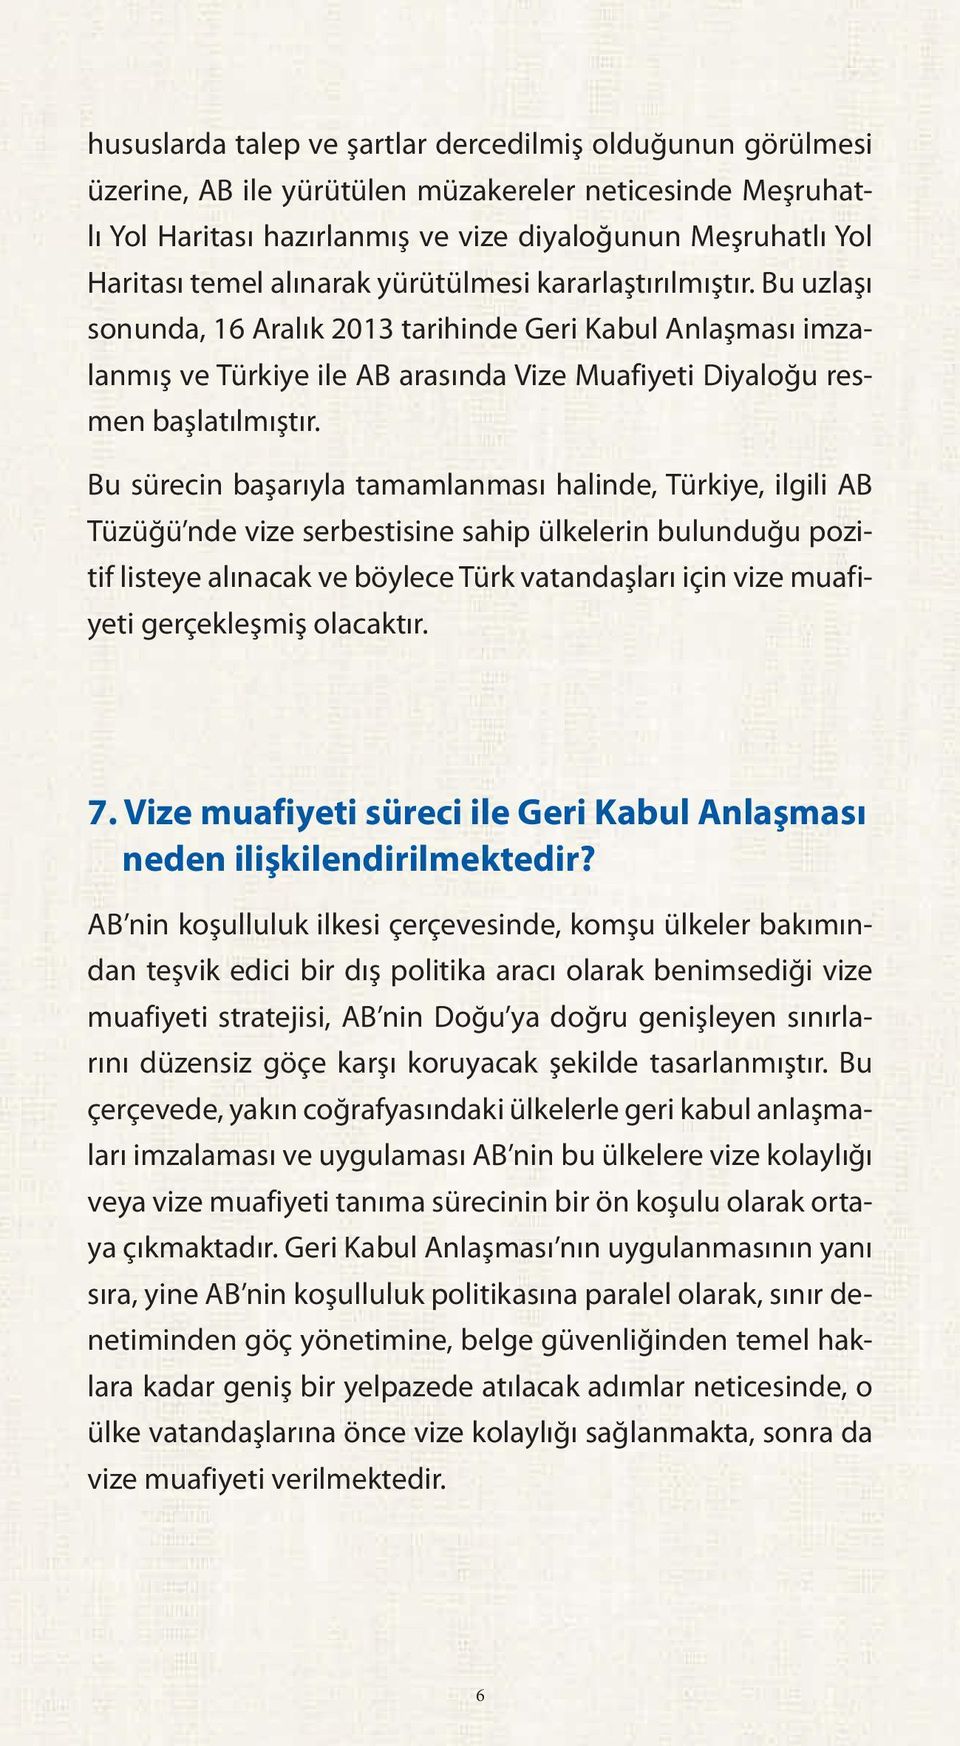 Bu sürecin başarıyla tamamlanması halinde, Türkiye, ilgili AB Tüzüğü nde vize serbestisine sahip ülkelerin bulunduğu pozitif listeye alınacak ve böylece Türk vatandaşları için vize muafiyeti